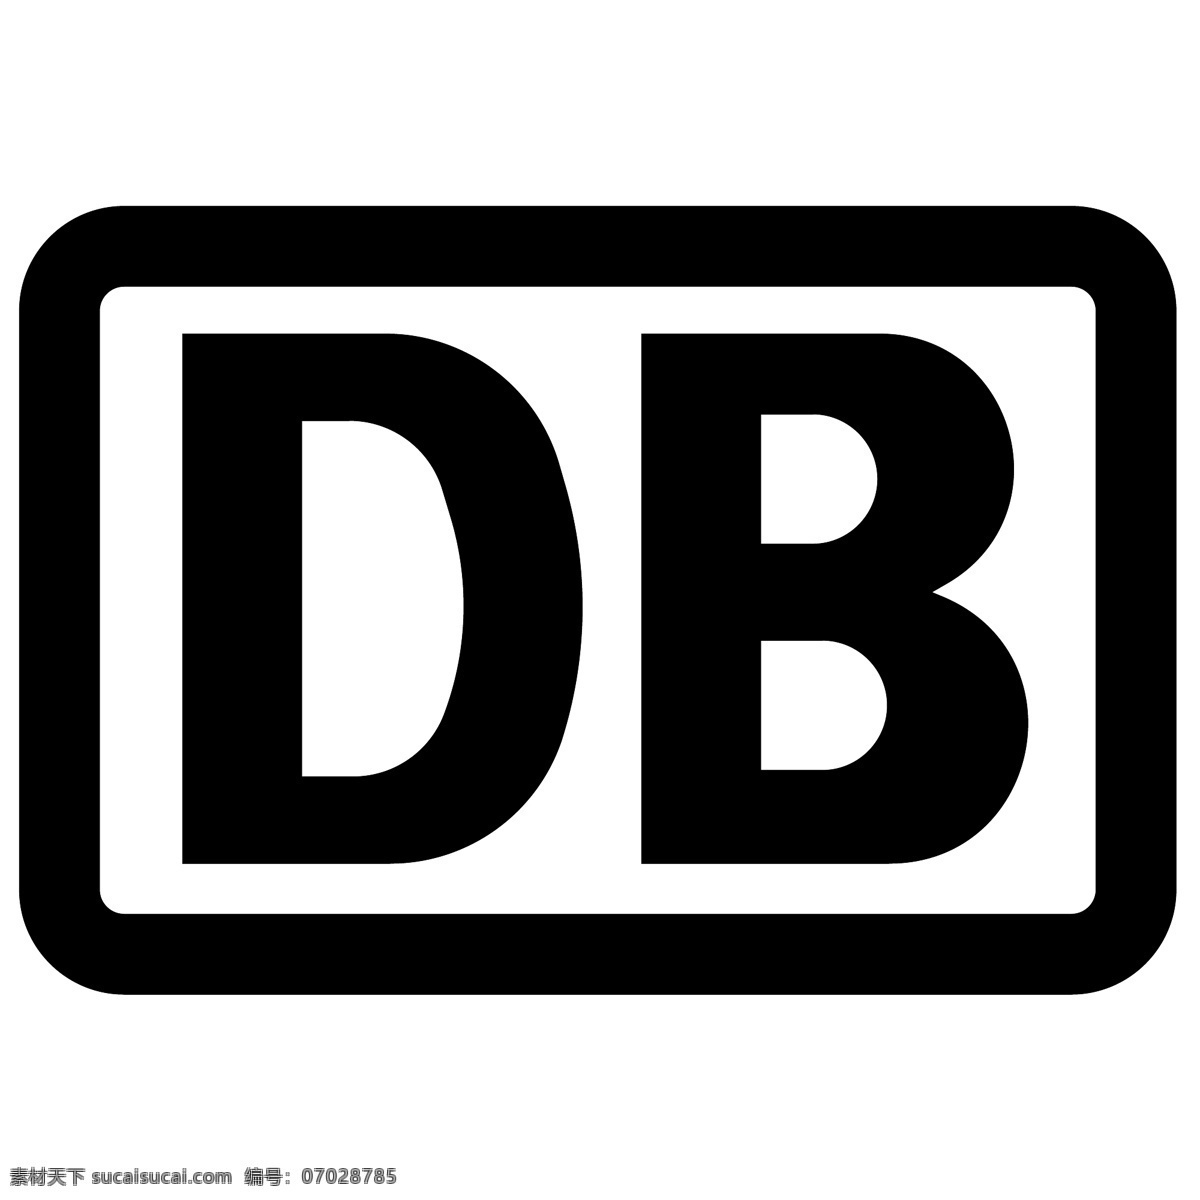 德国 铁路 股份公司 德意志 联邦 deutsche bahn ag 矢量 德国联邦 公司 logo 标志 铁路公司 向量 ag矢量设计 ag矢量标志 标志的银 矢量图 建筑家居